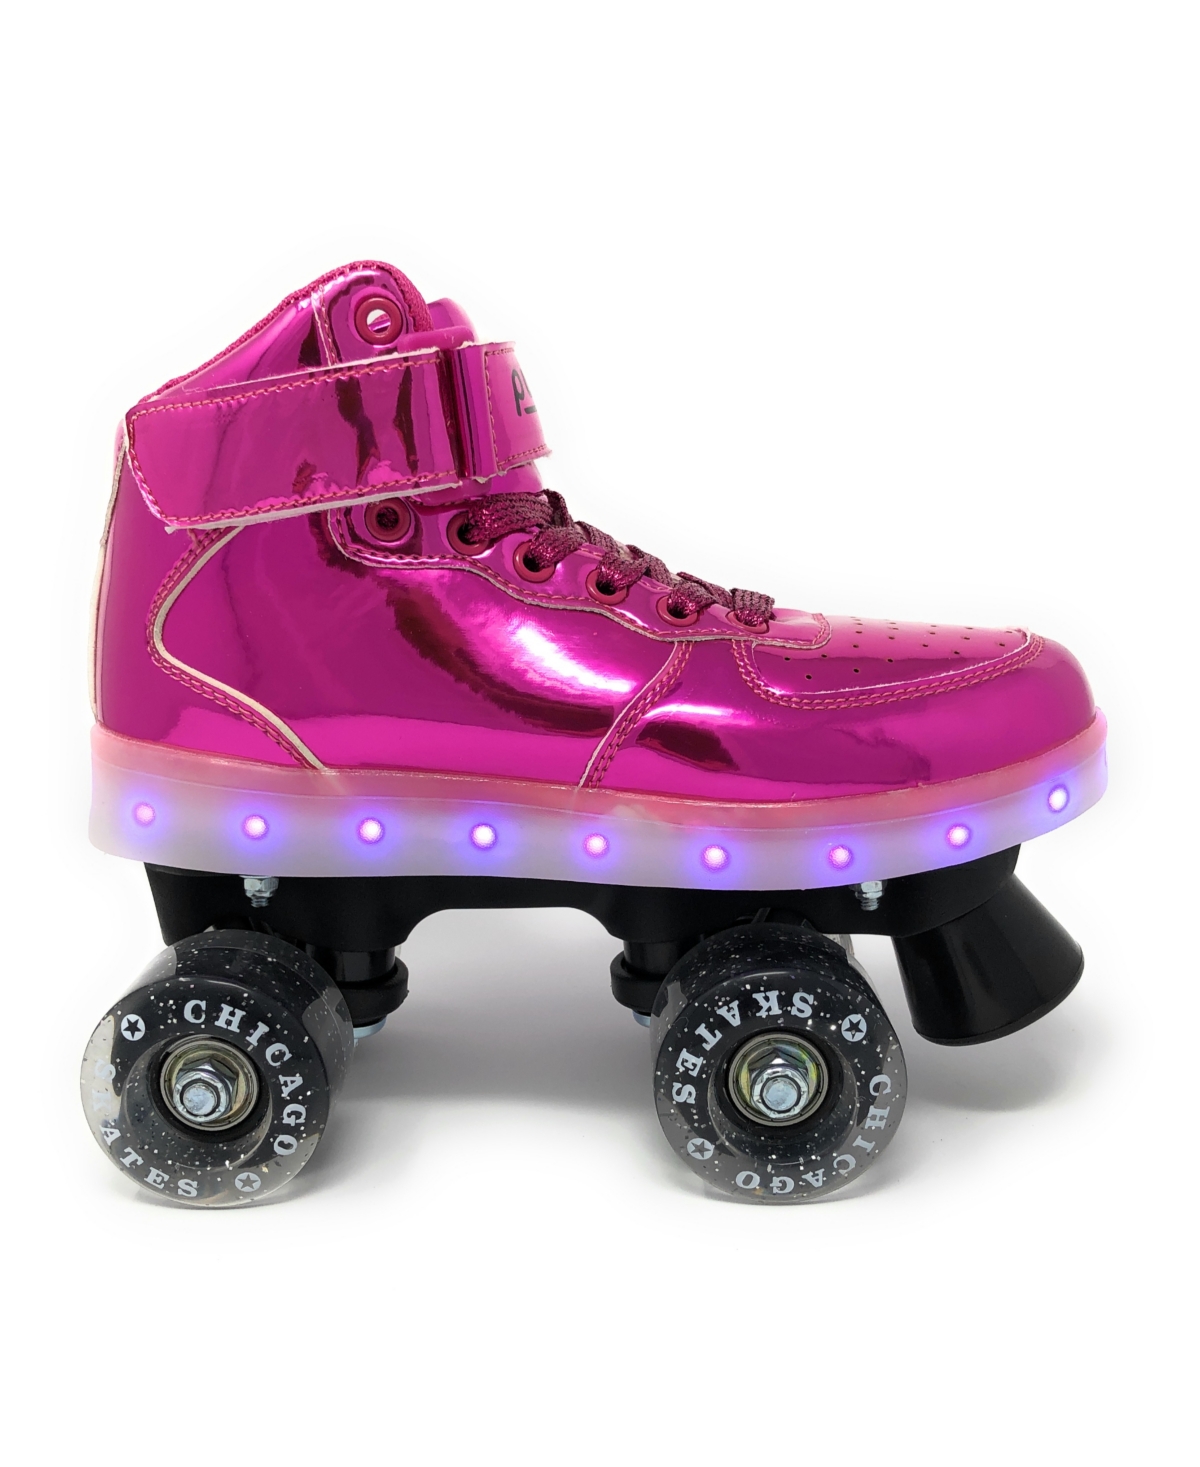 Chicago Pulse Led Light Up Quad Roller Skates, Pink - Size 7 - Pink